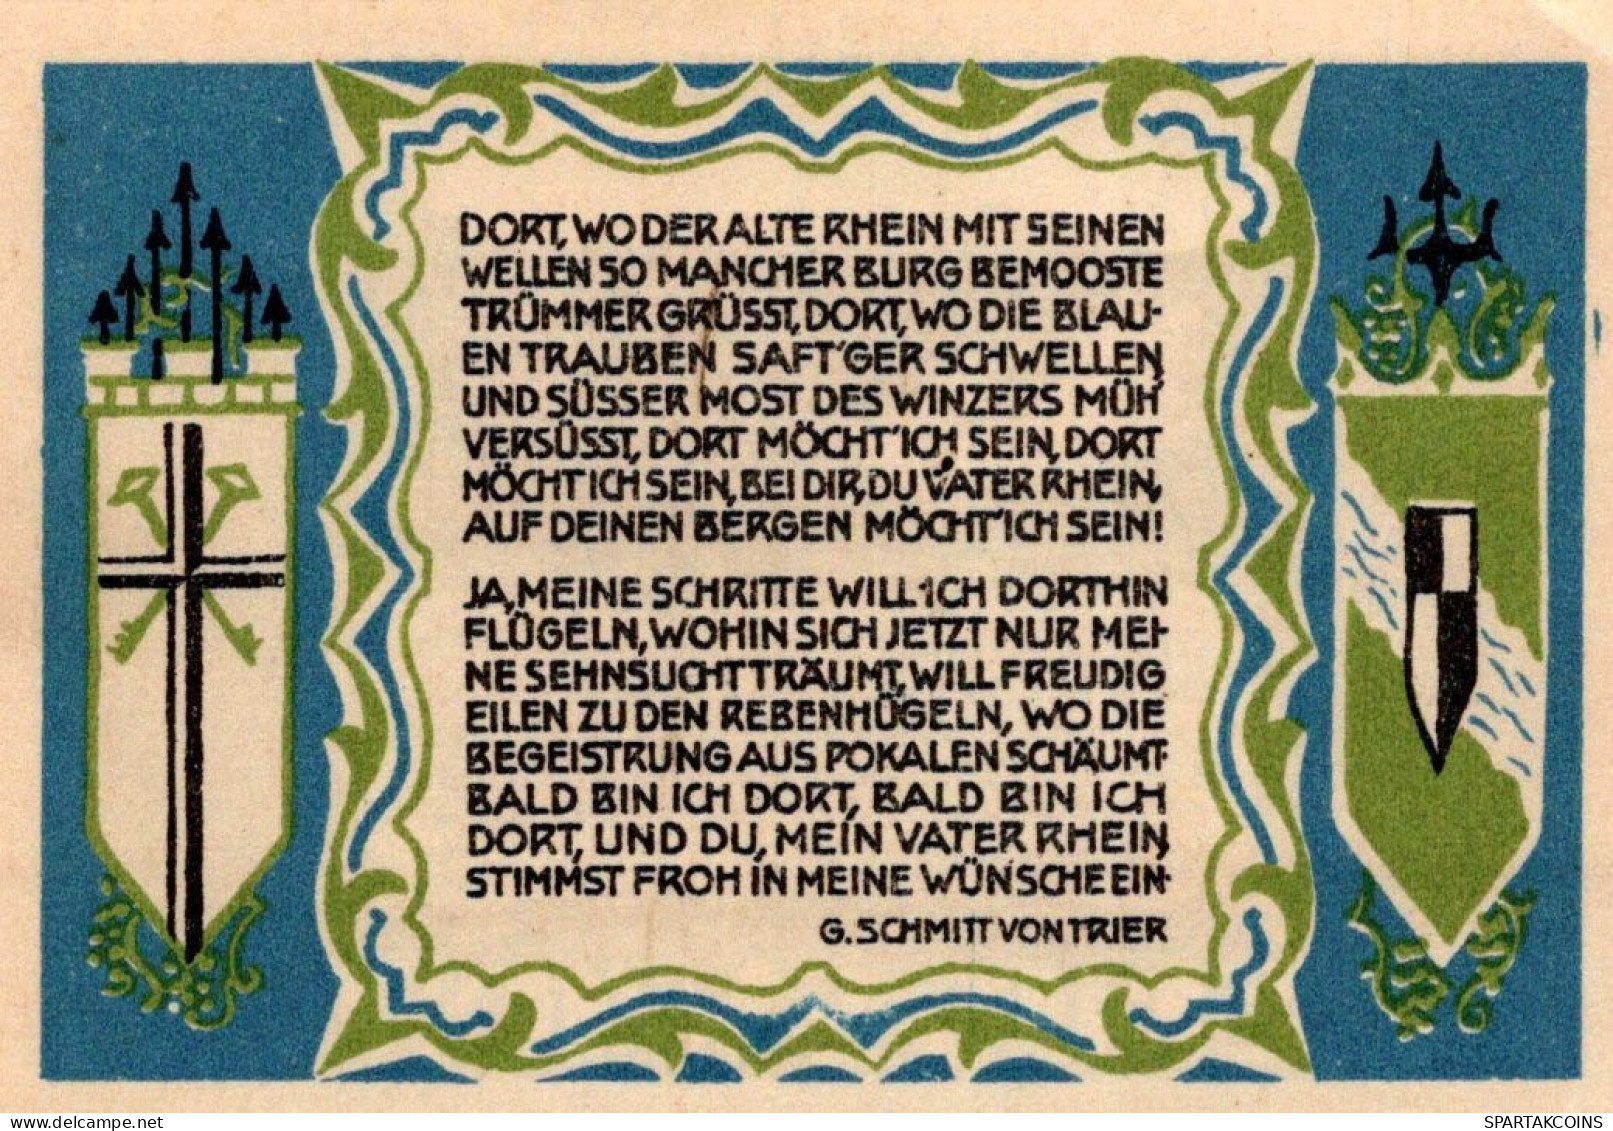 50 PFENNIG 1921 Stadt KoNIGSWINTER Rhine DEUTSCHLAND Notgeld Banknote #PF967 - [11] Local Banknote Issues